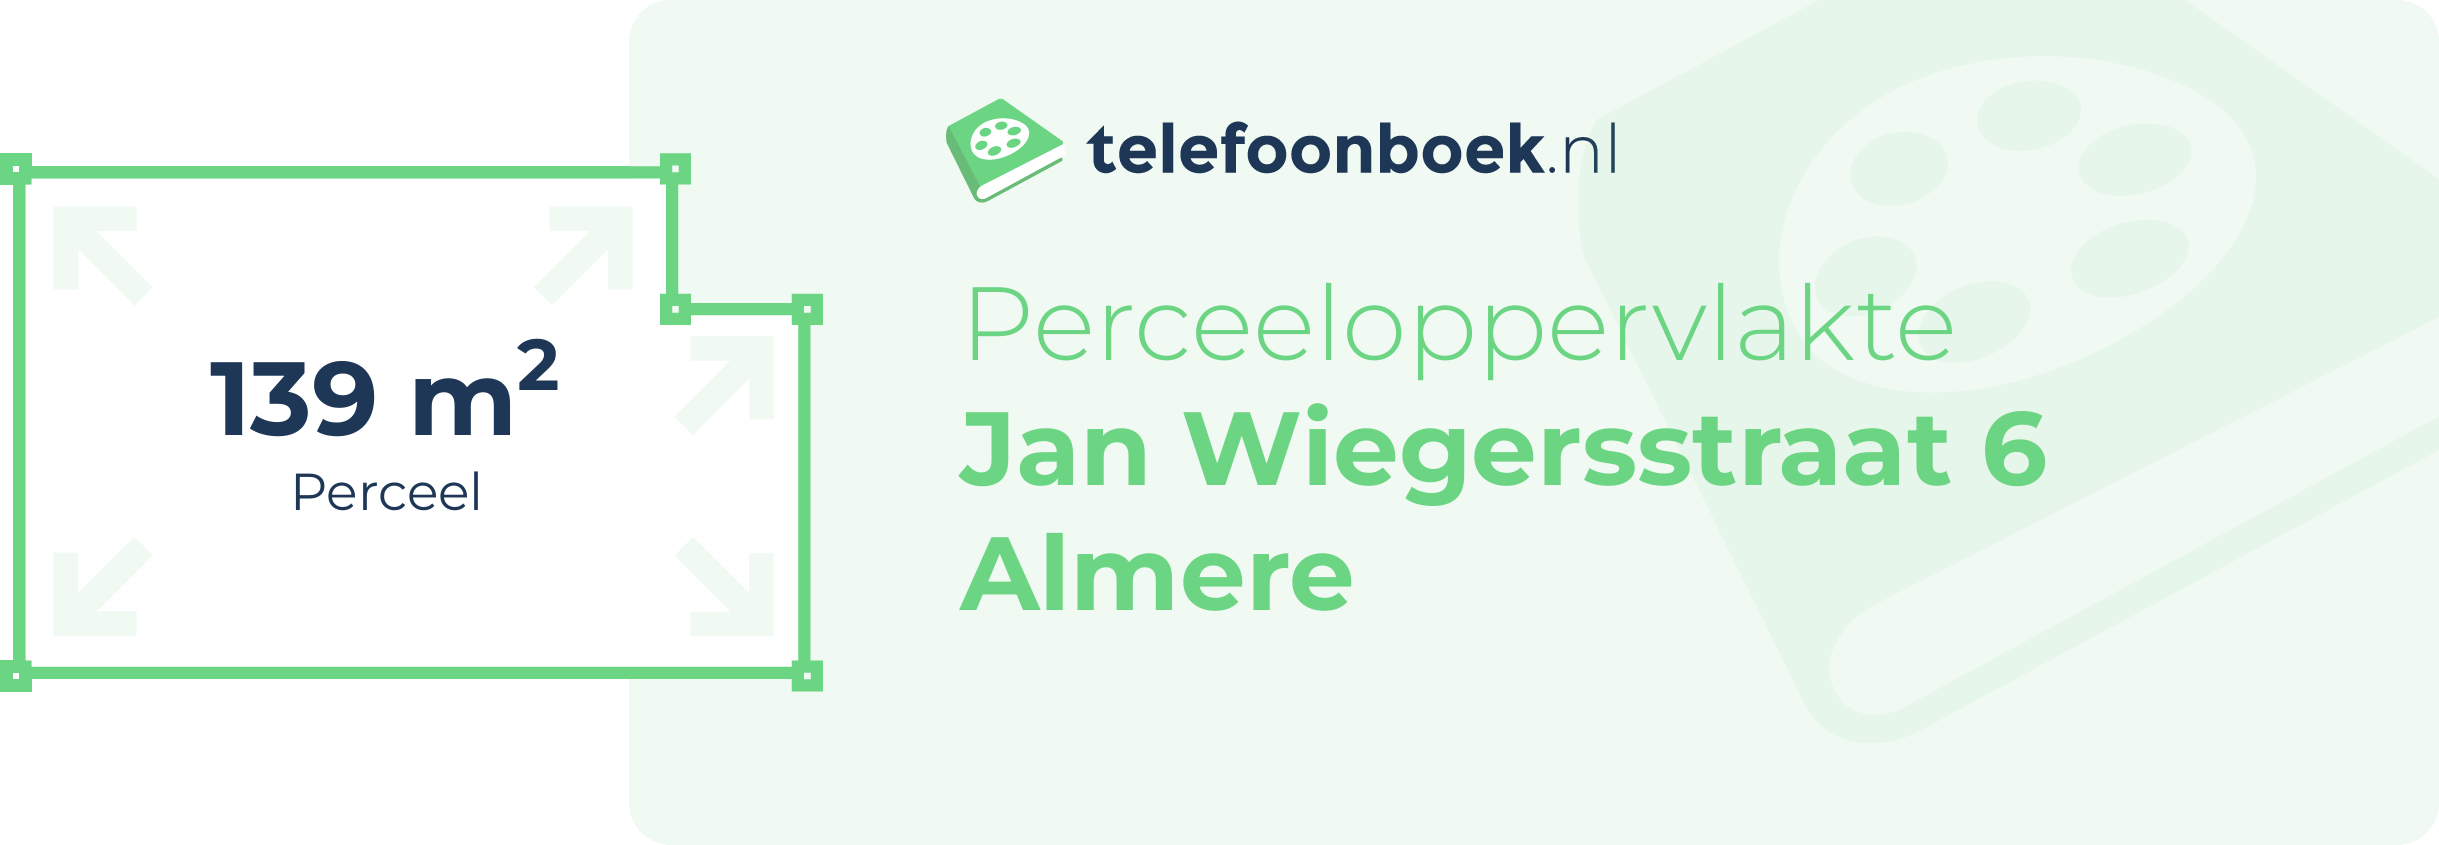 Perceeloppervlakte Jan Wiegersstraat 6 Almere